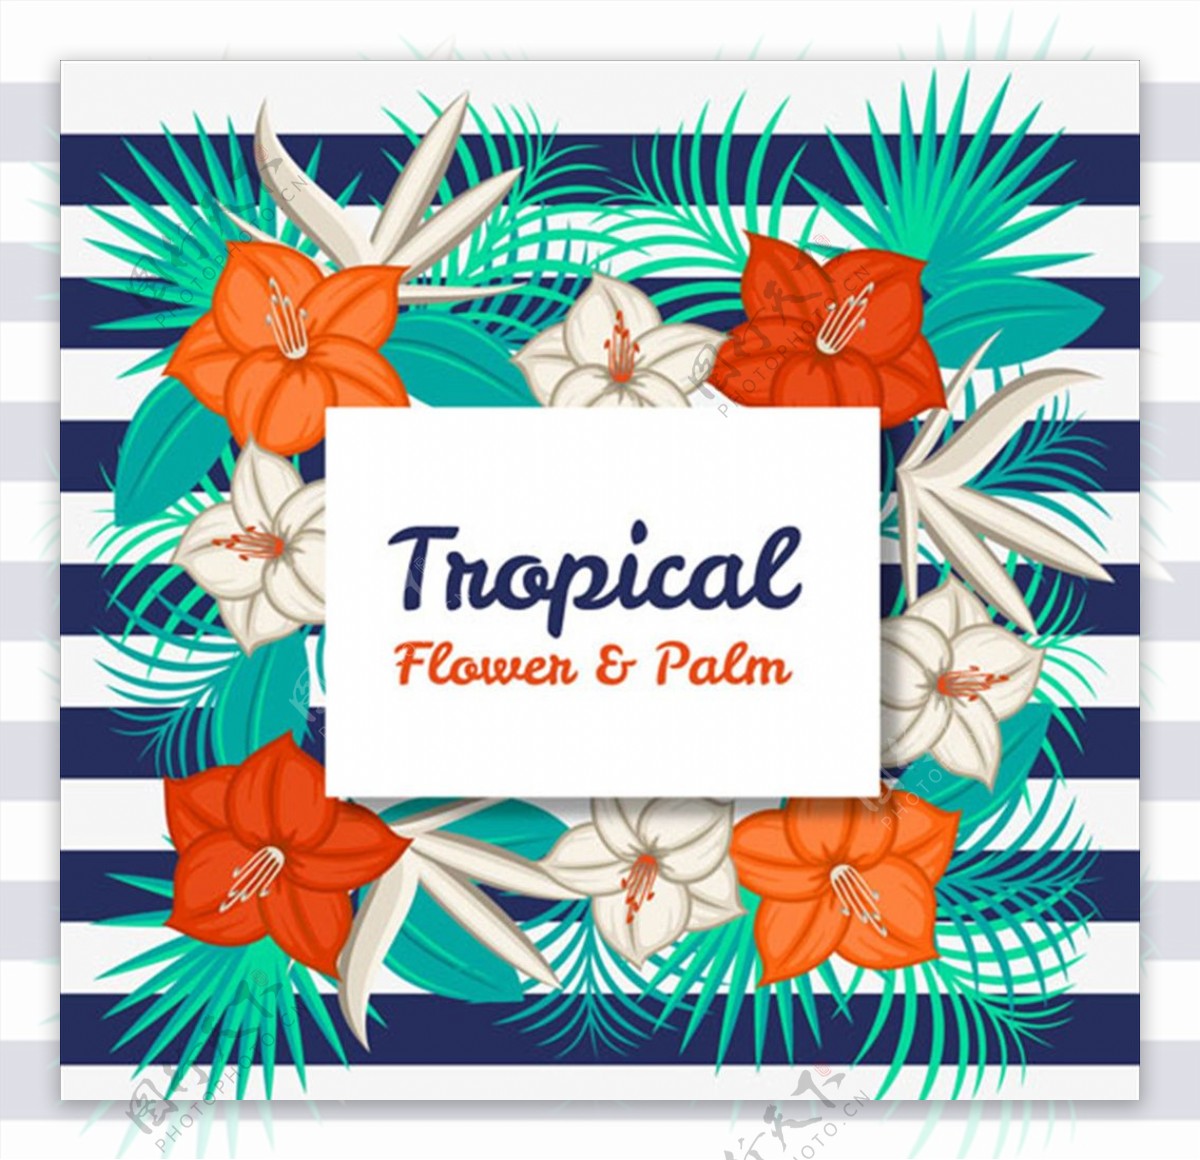 热带花卉和棕榈叶的条纹背景